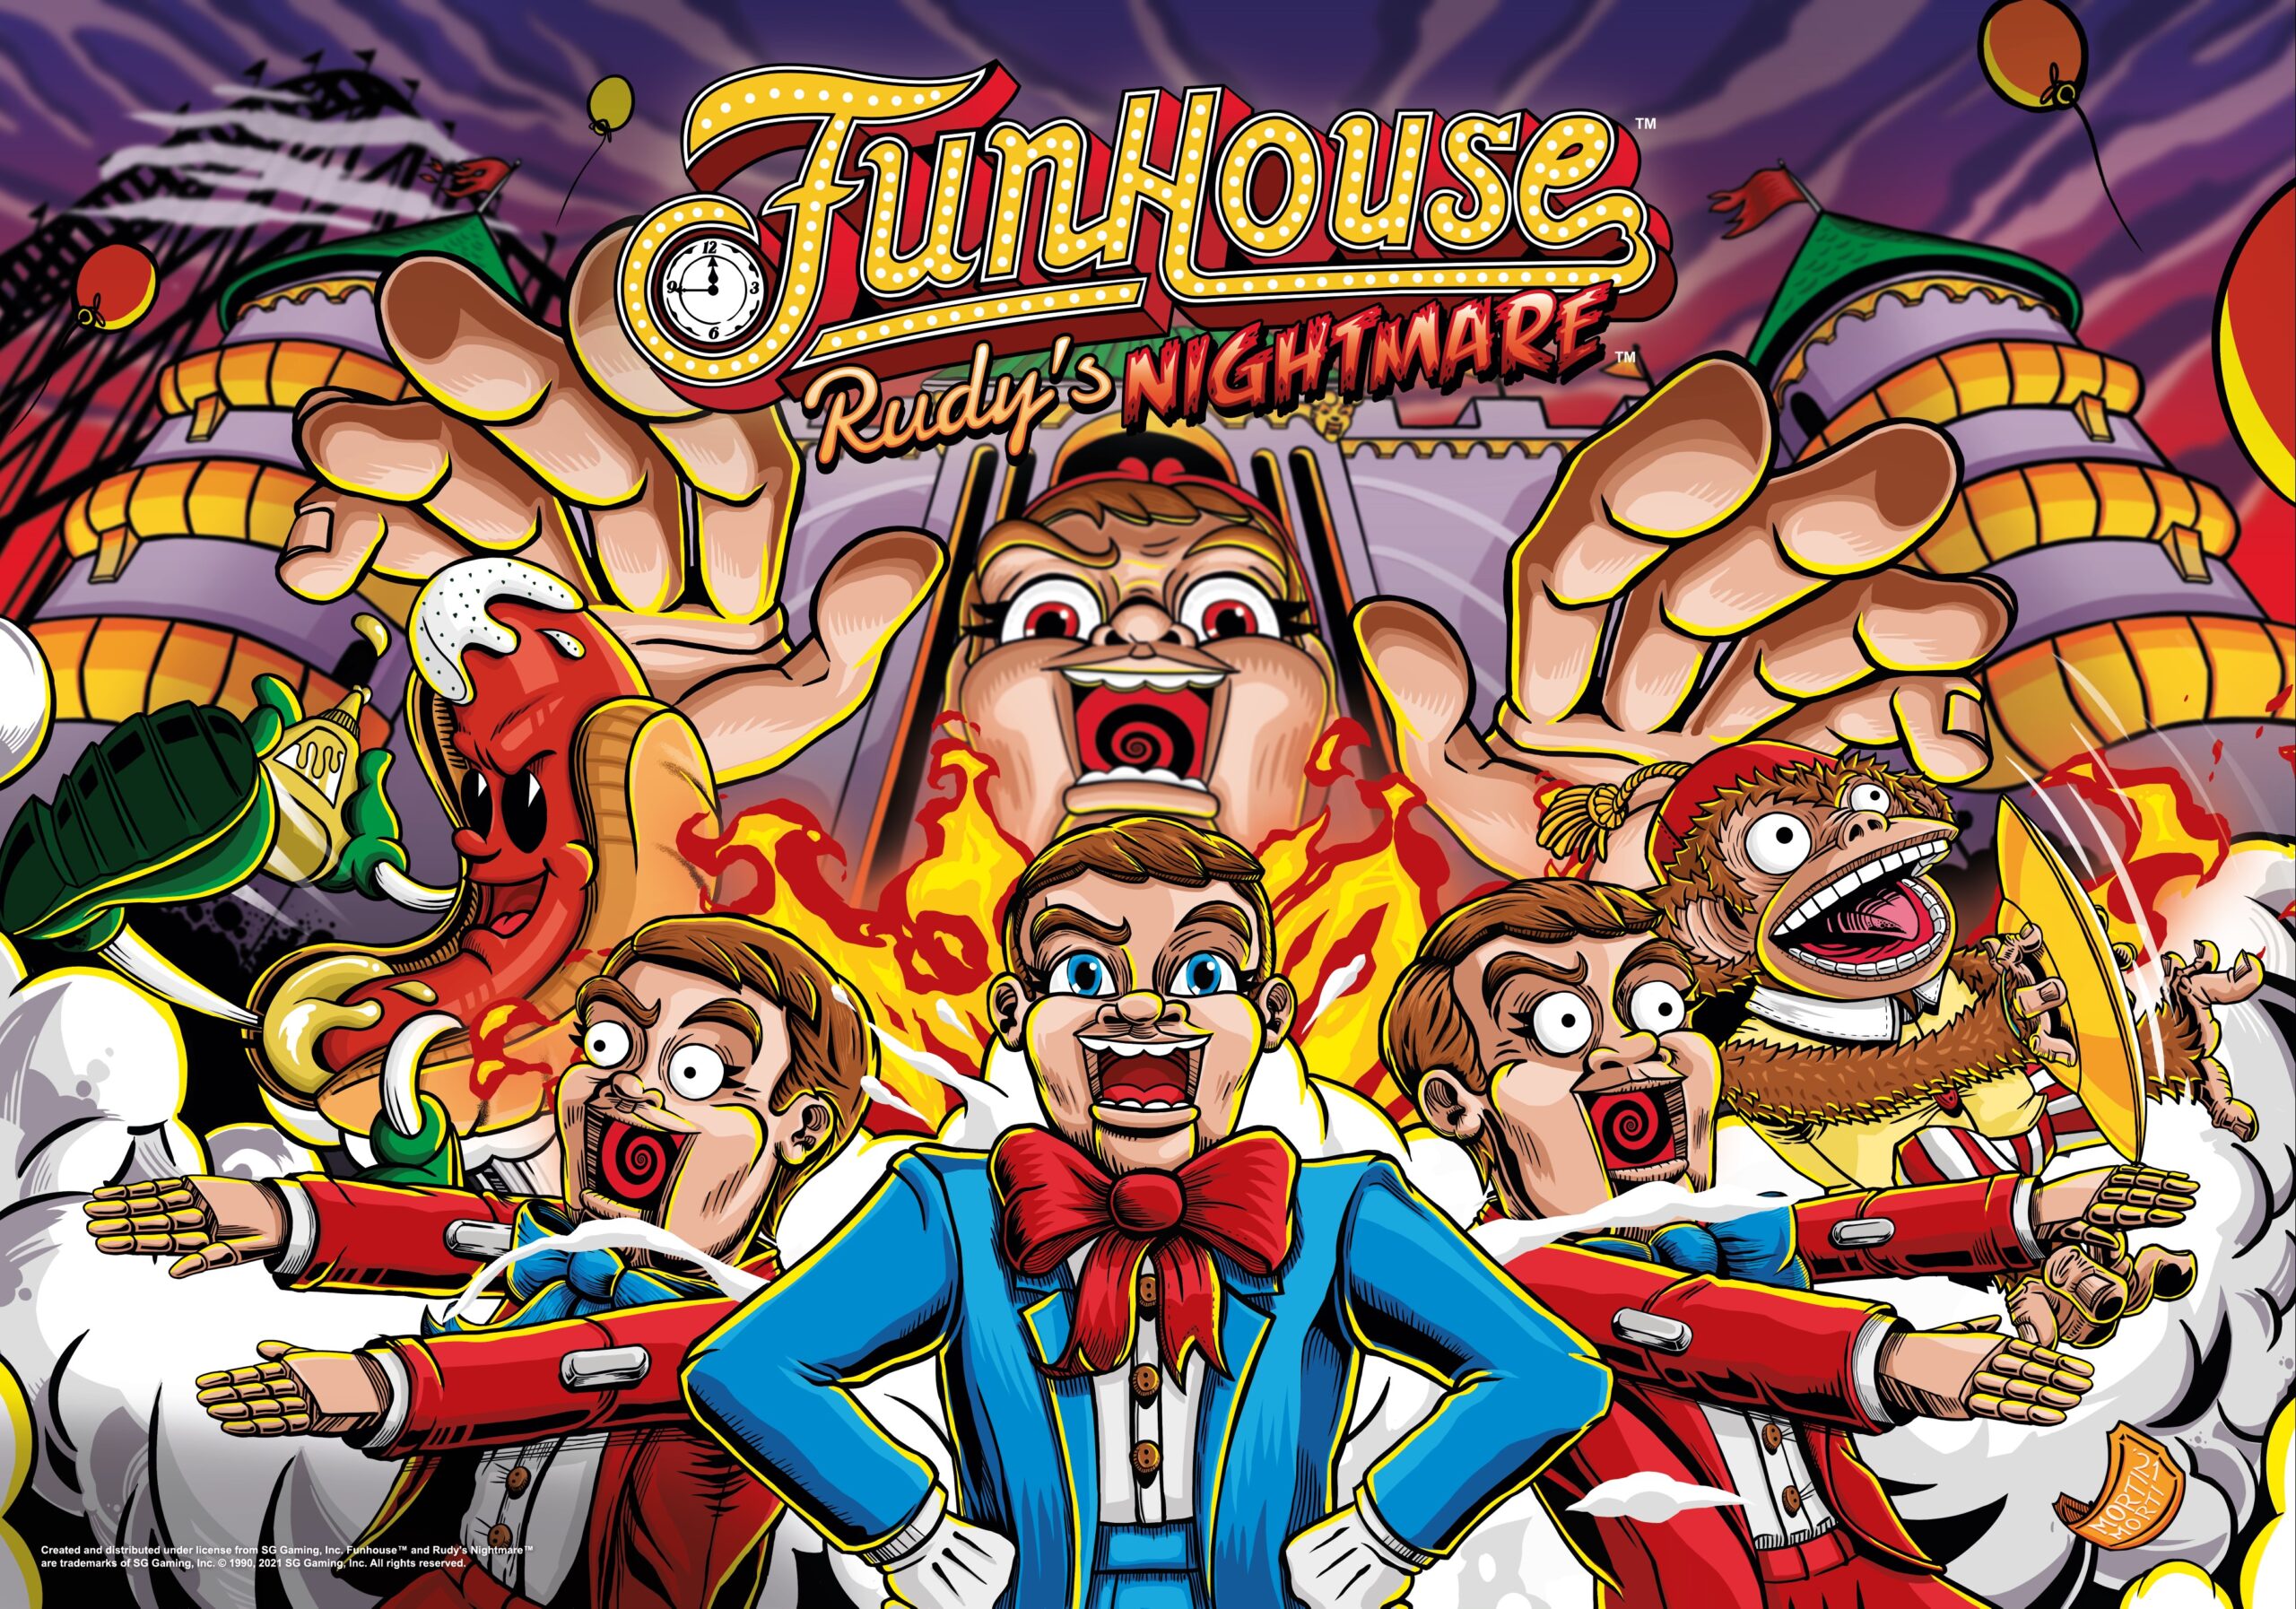 Fun House Pinball